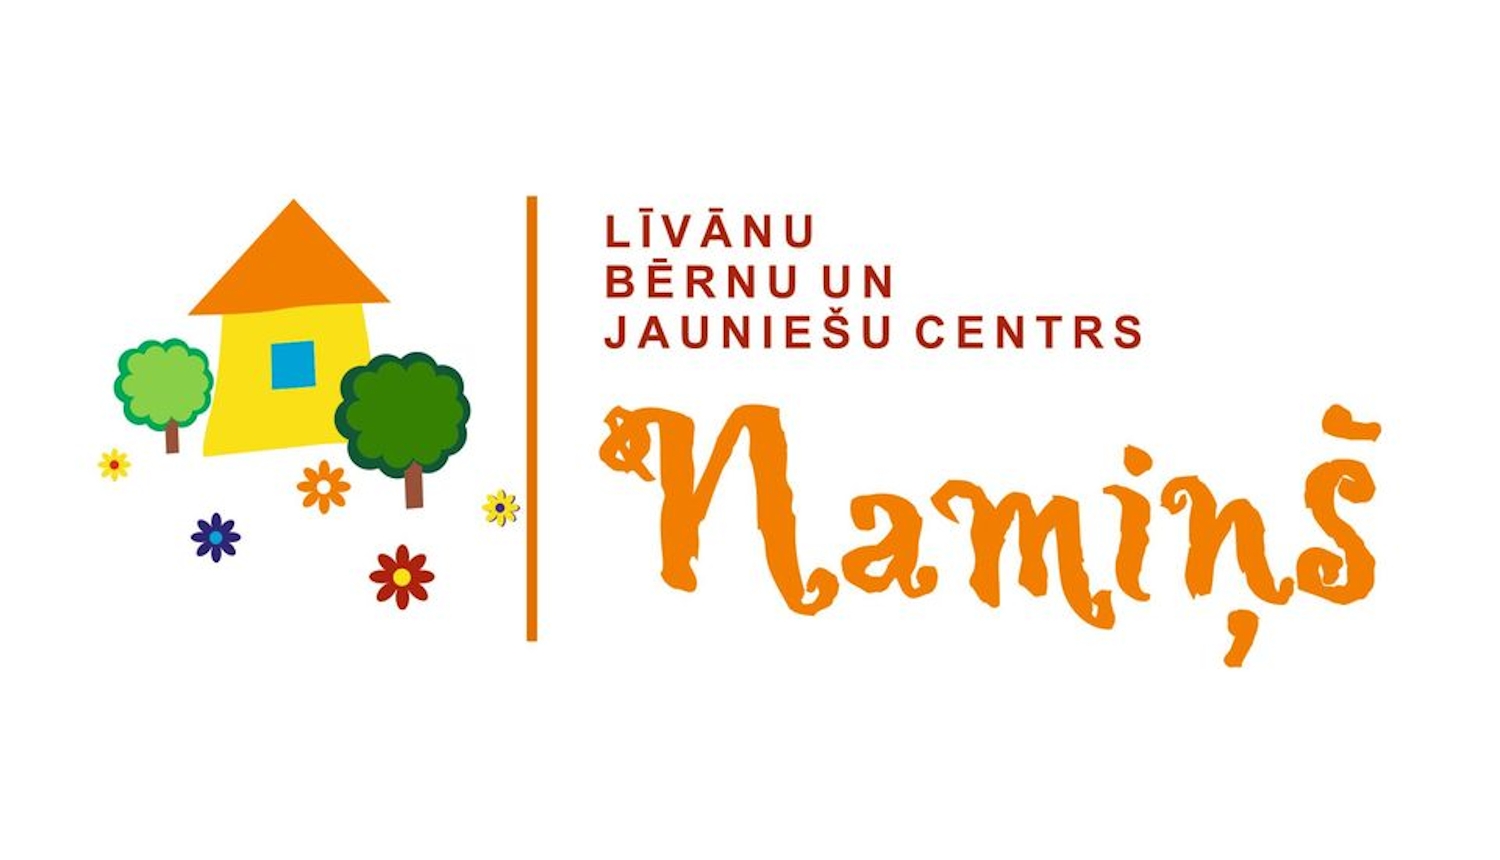 Līvānu bērnu un jauniešu centra logo ar mājas zīmējumu